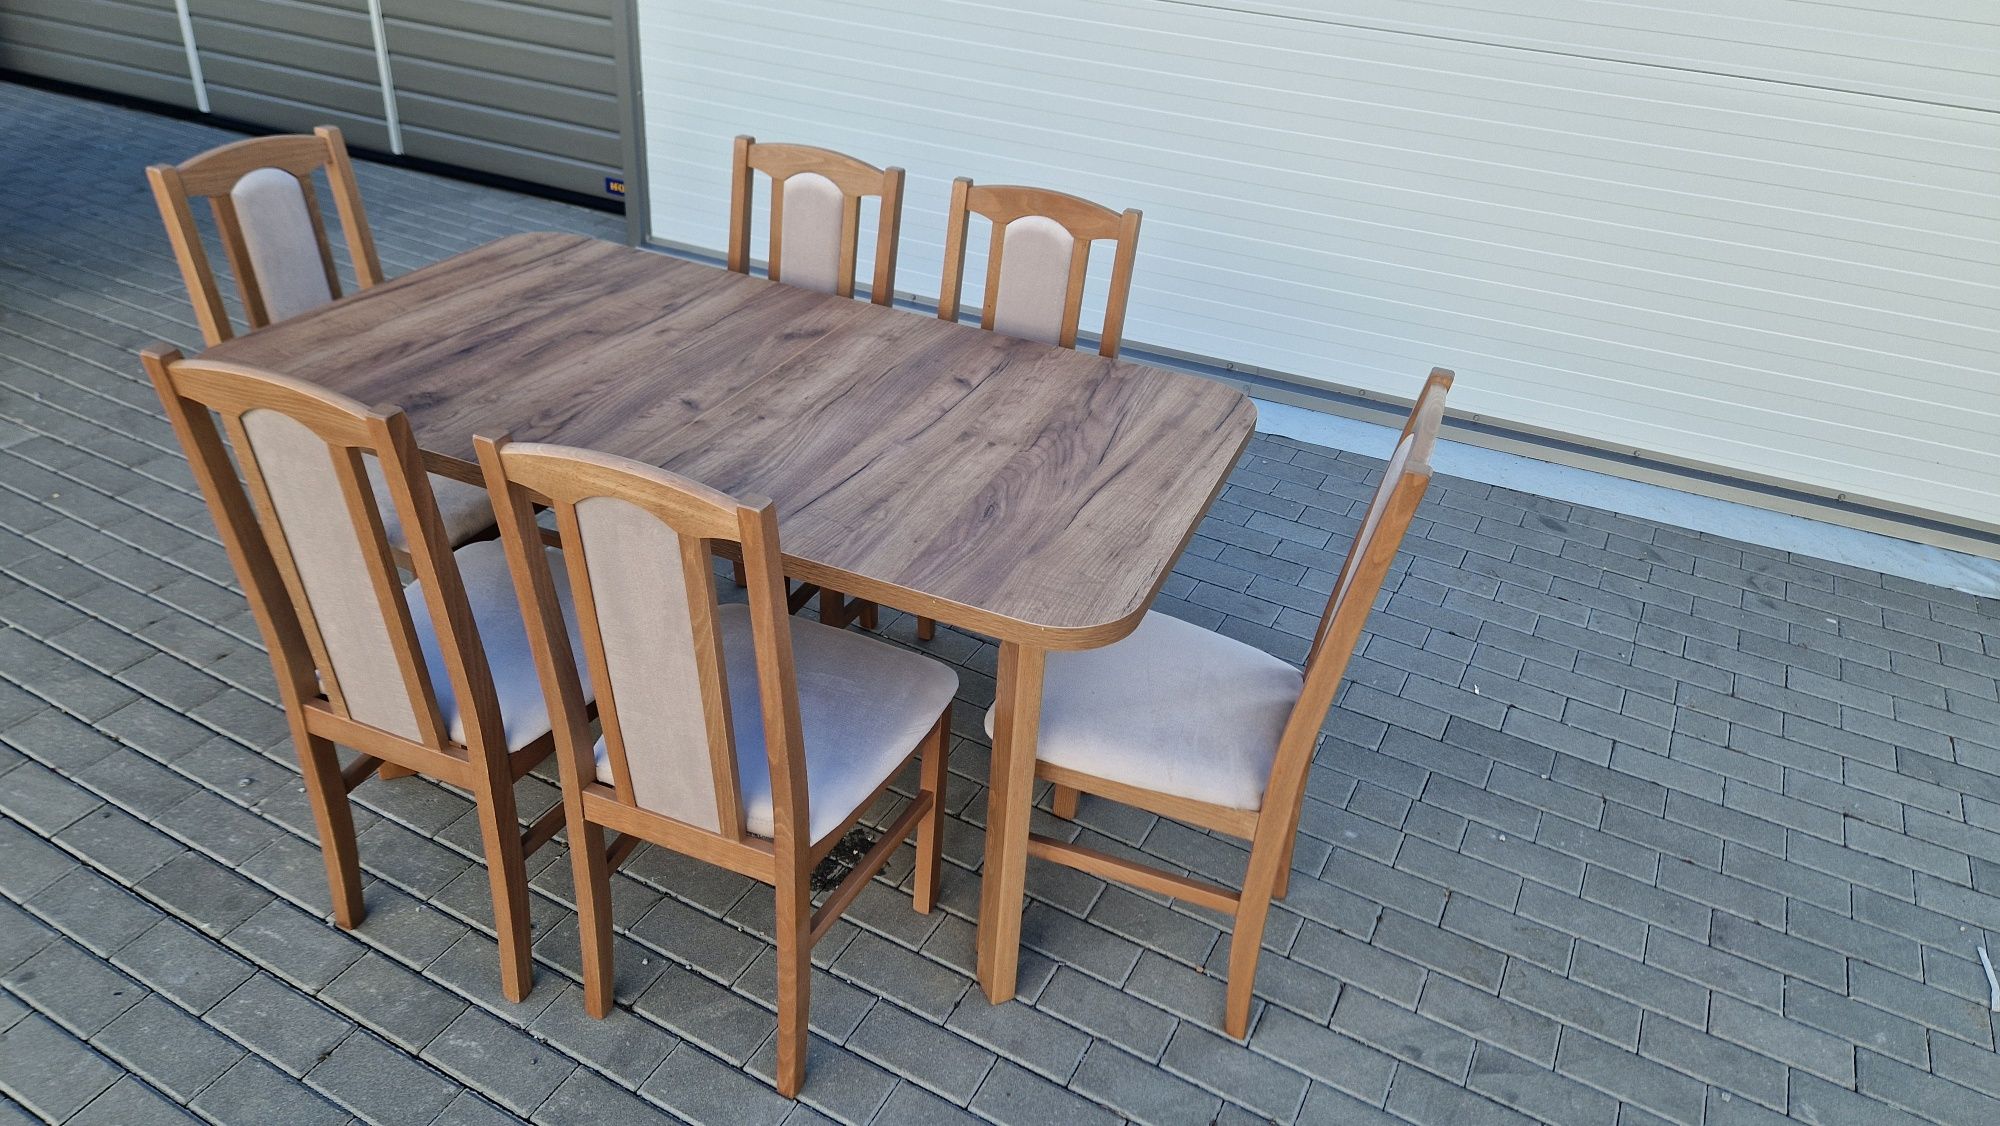 Nowe: Stół 80x140/180 + 6 krzeseł, ORZECH JASNY+LATTE, dostawa PL